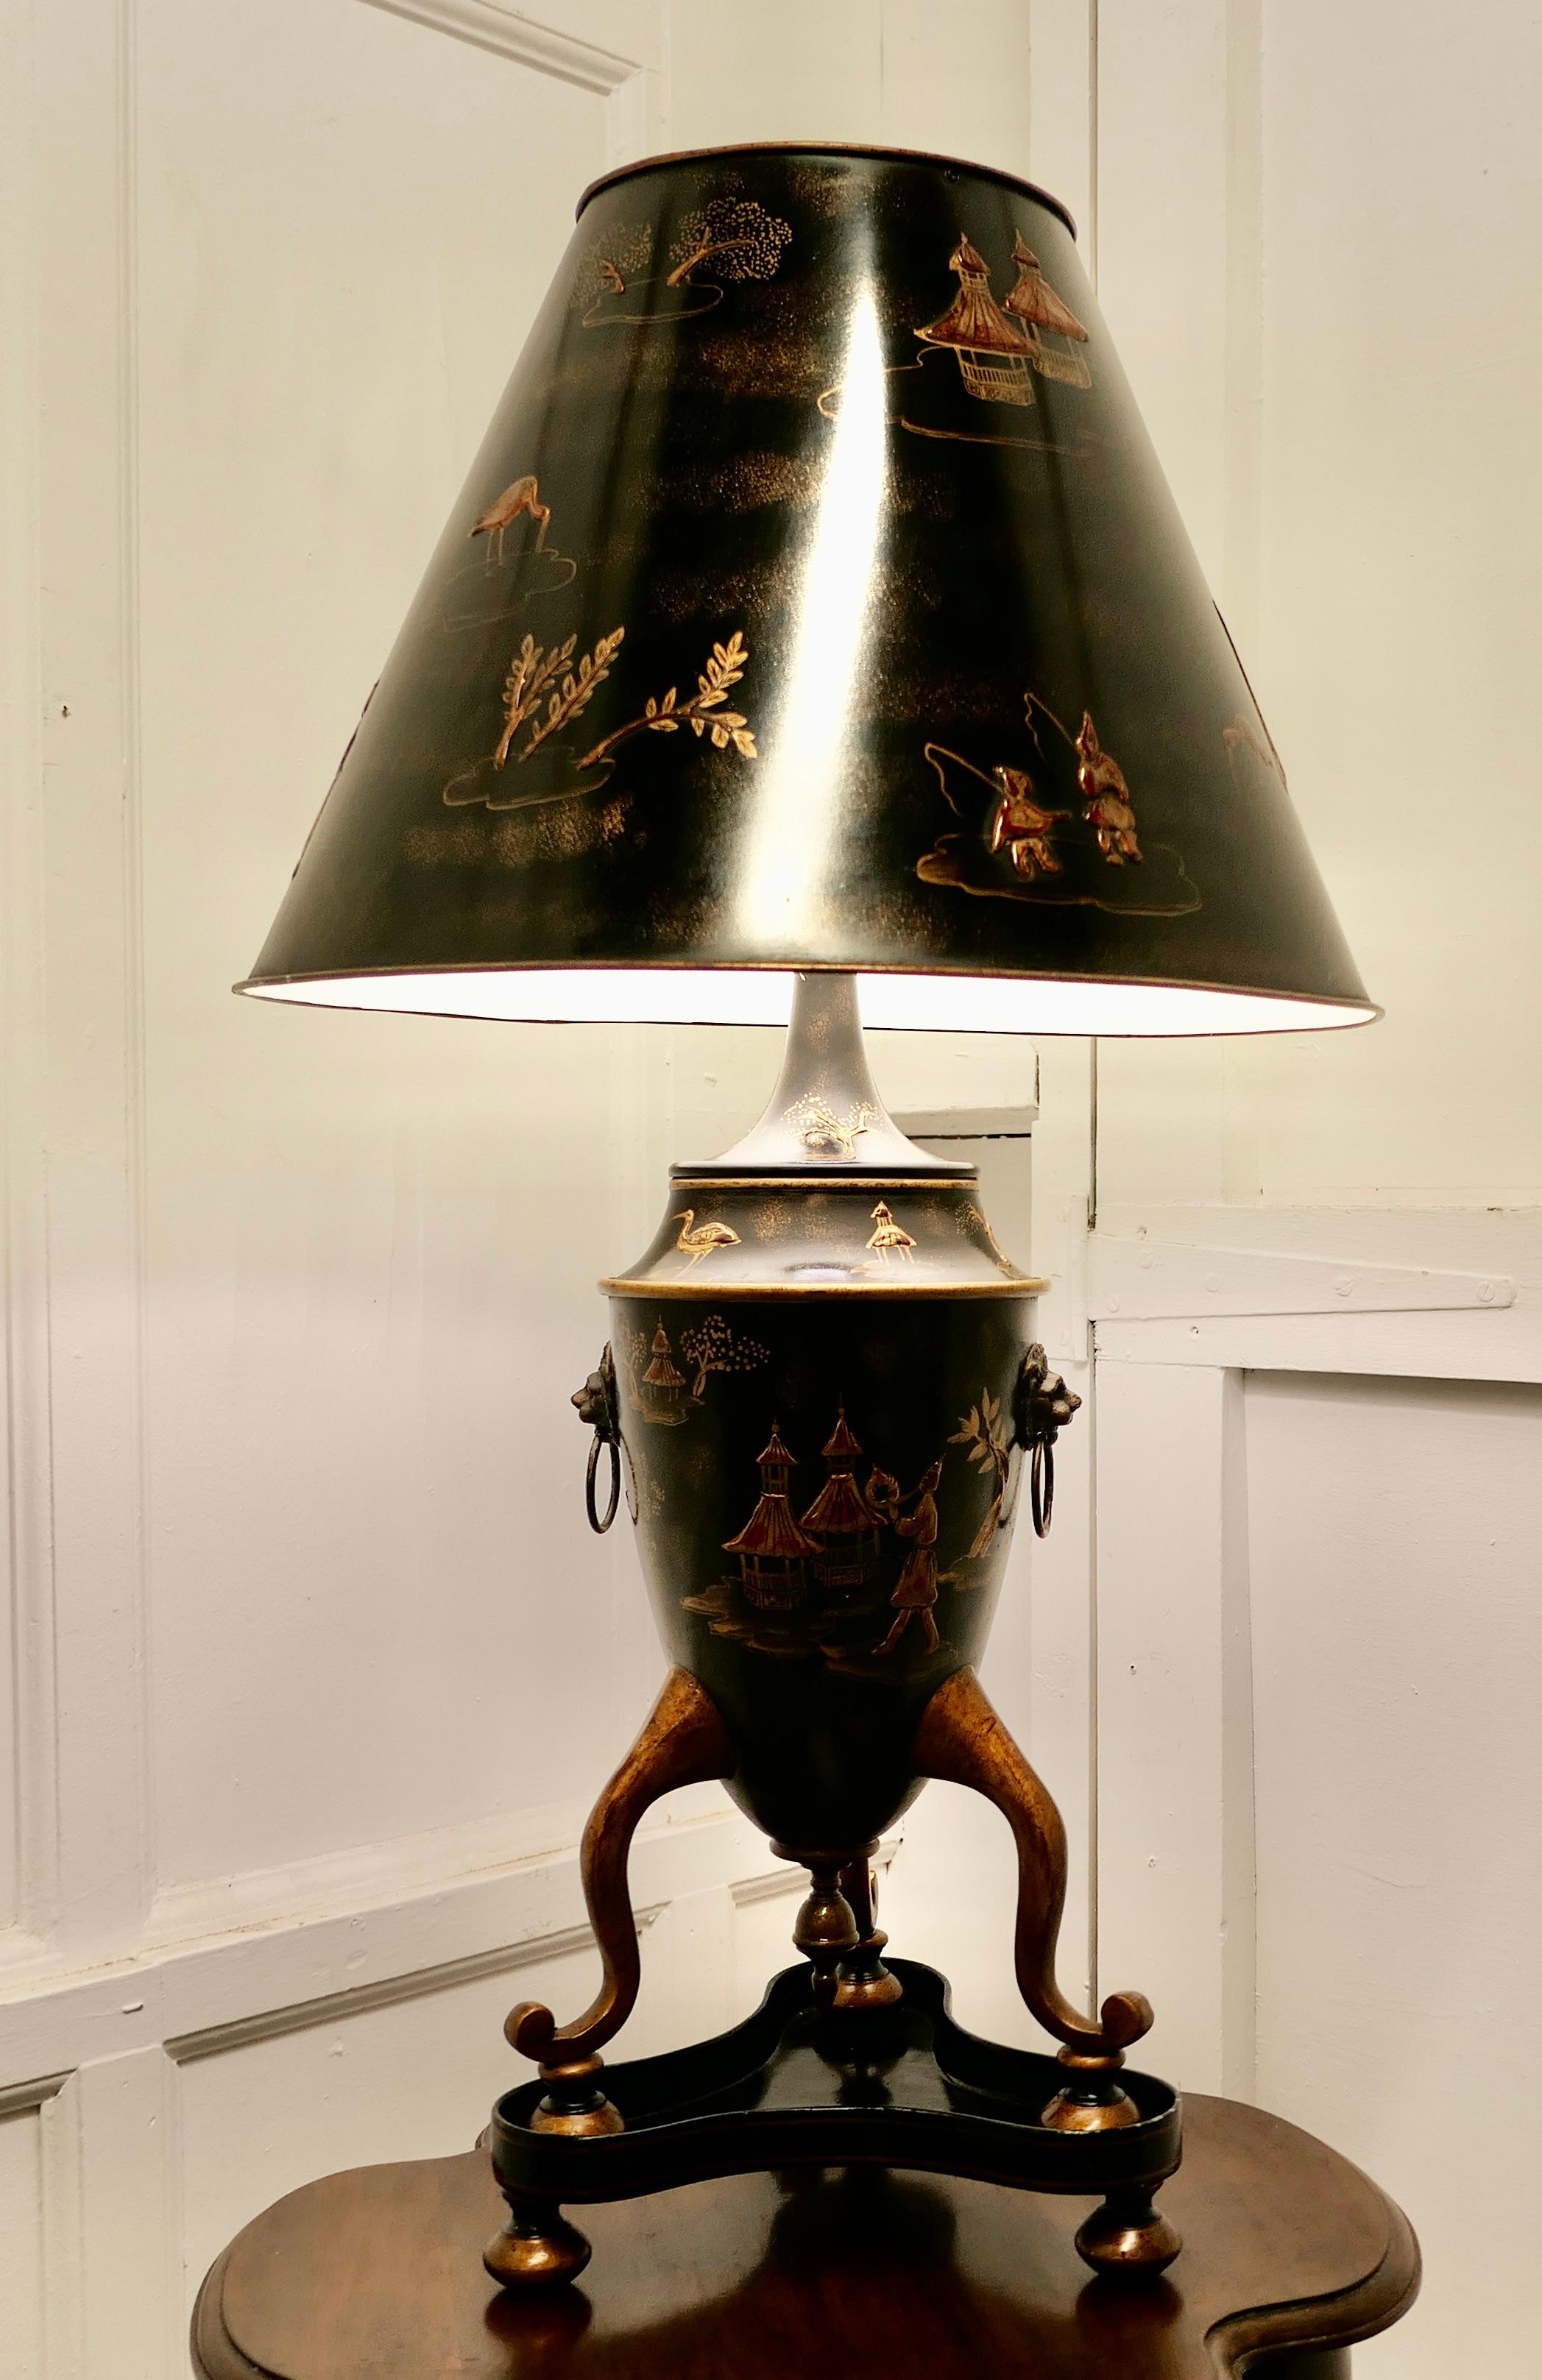 Très grande lampe de table en faïence noire, or et rouge de Chinoiserie 

Une grande lampe étonnante avec son abat-jour d'origine, dans le style d'une urne japonaise géorgienne à trois pieds reposant sur un socle, avec un masque en laiton et des